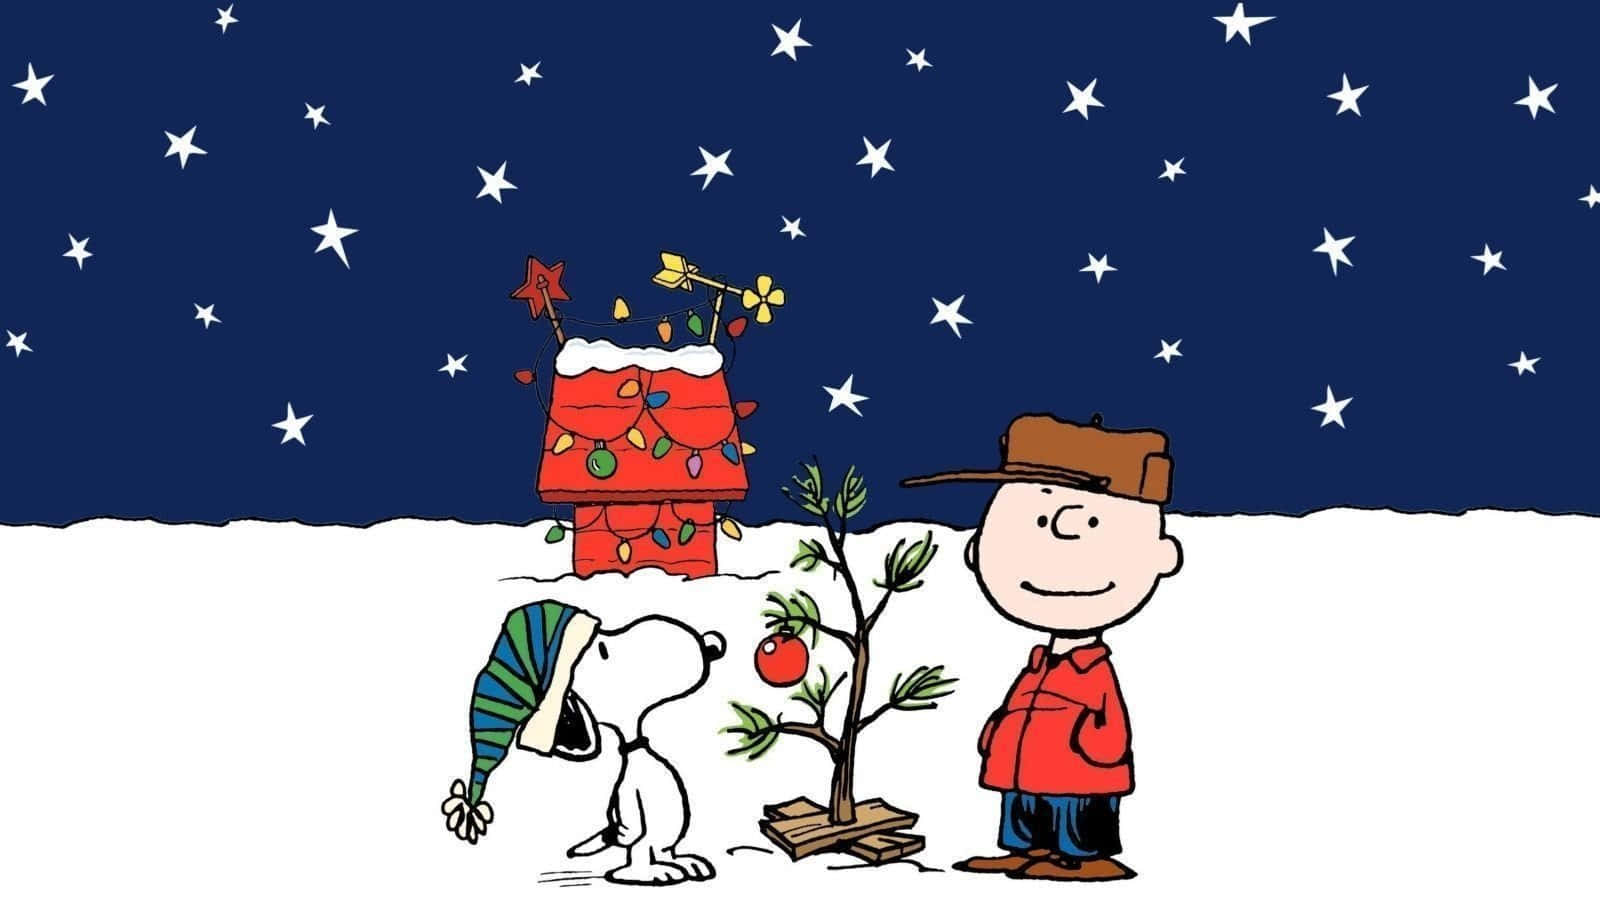 Sfondodivertente Per Zoom Di Natale Con Snoopy E Charlie Brown